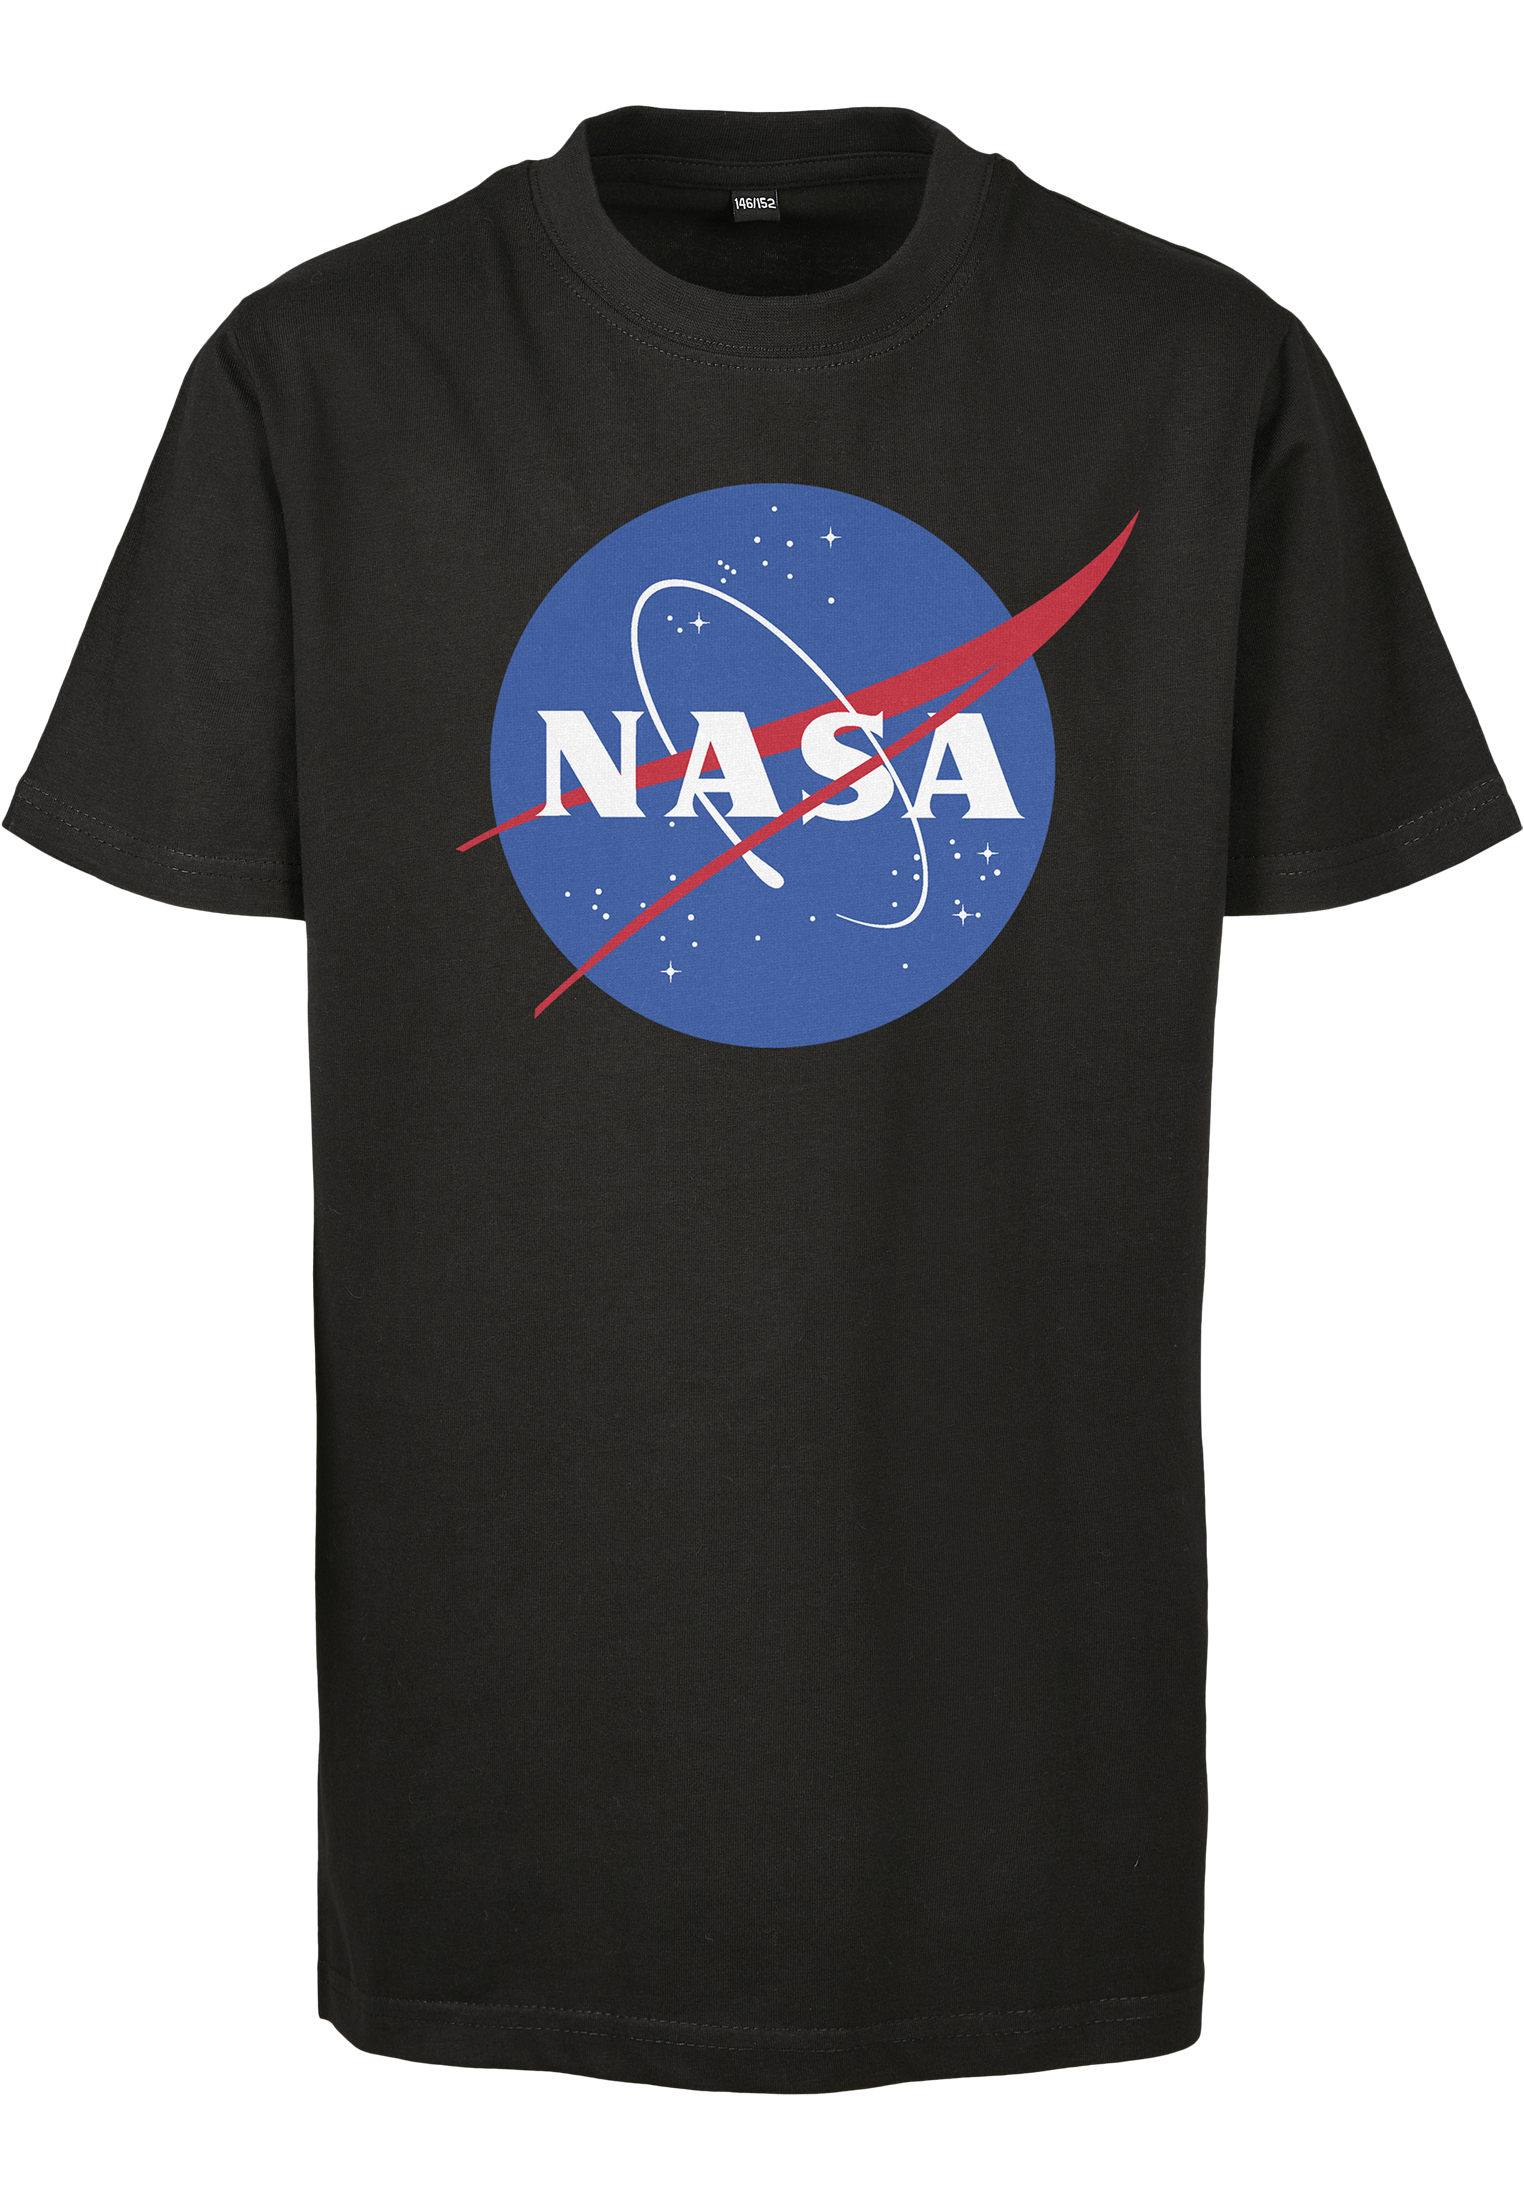 NASA Insignia T-shirt for children black